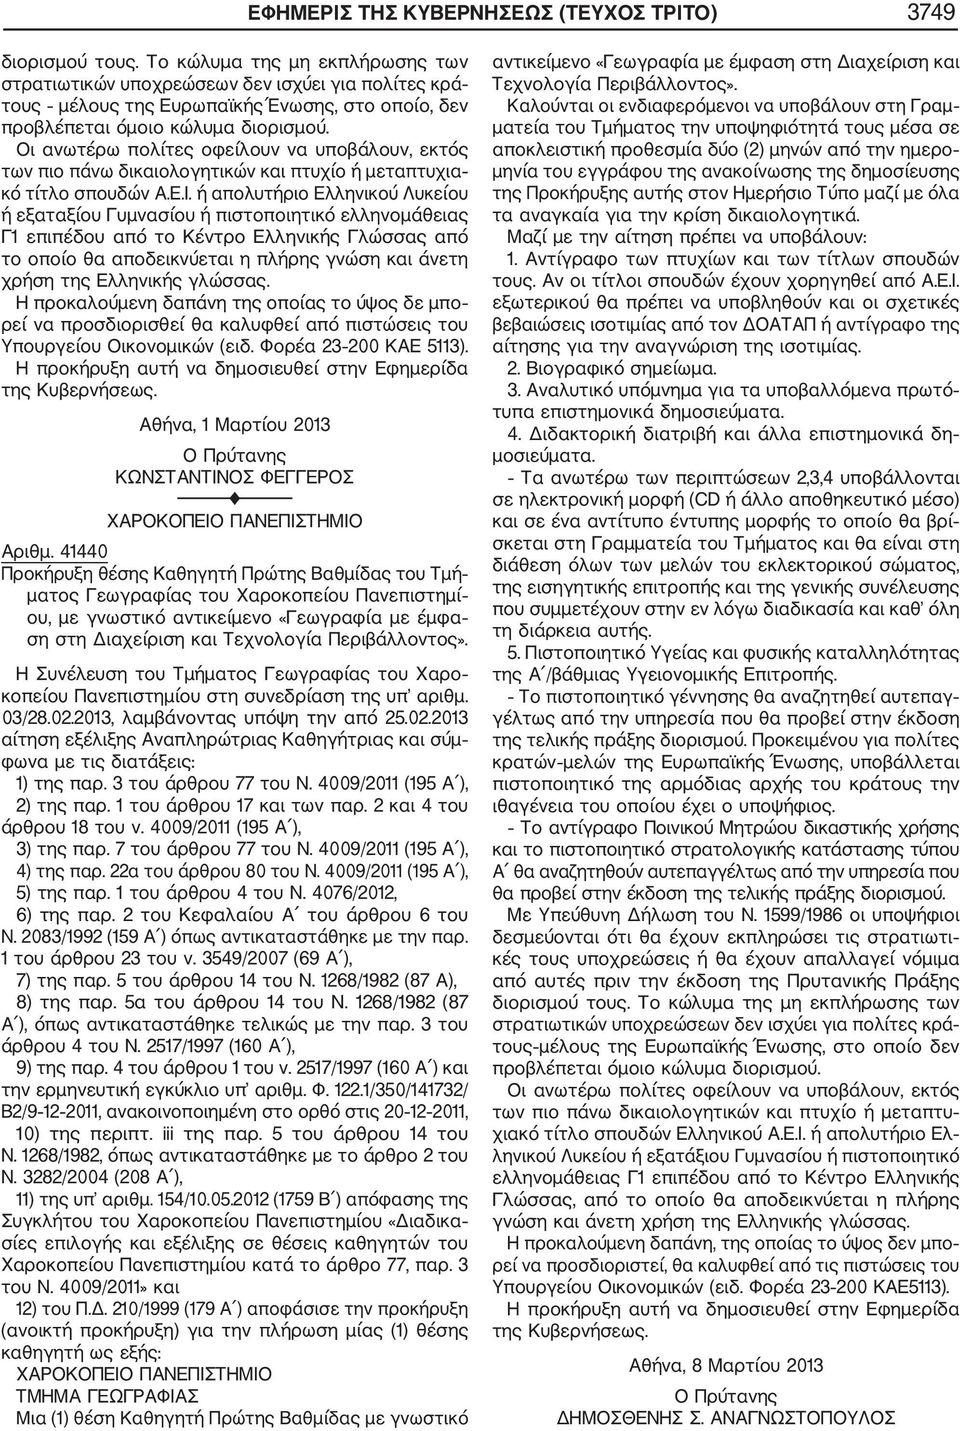 Η Συνέλευση του Τμήματος Γεωγραφίας του Χαρο κοπείου Πανεπιστημίου στη συνεδρίαση της υπ αριθμ. 03/28.02.2013, λαμβάνοντας υπόψη την από 25.02.2013 αίτηση εξέλιξης Αναπληρώτριας Καθηγήτριας και σύμ φωνα με τις διατάξεις: 1) της παρ.